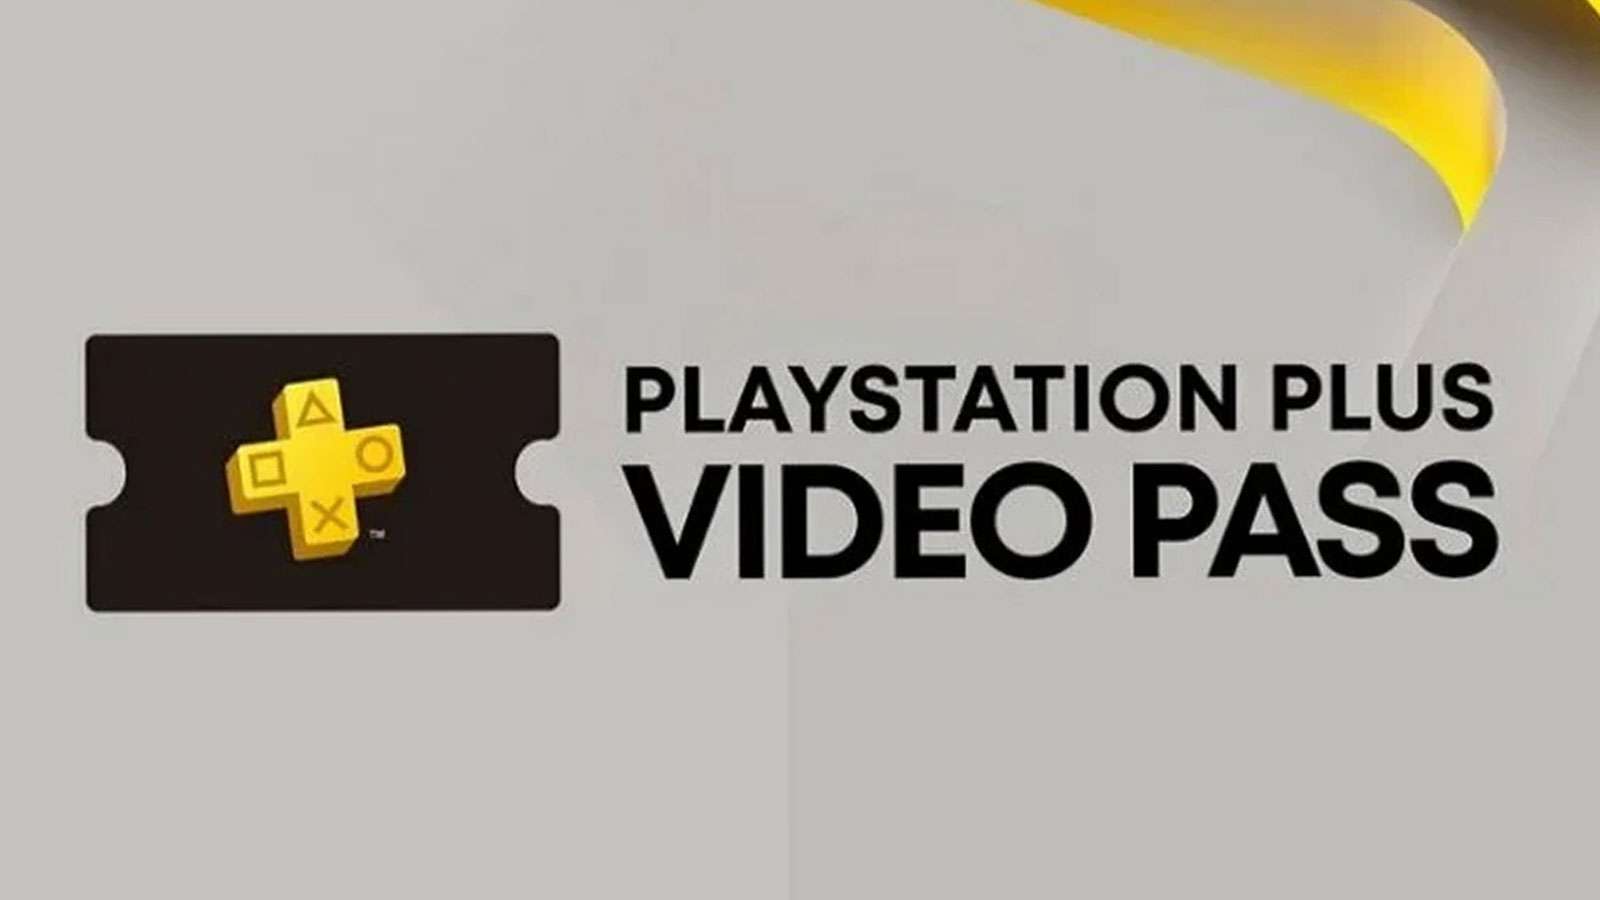 Le leak d'un PlayStation Plus Video Pass affole la twittosphère